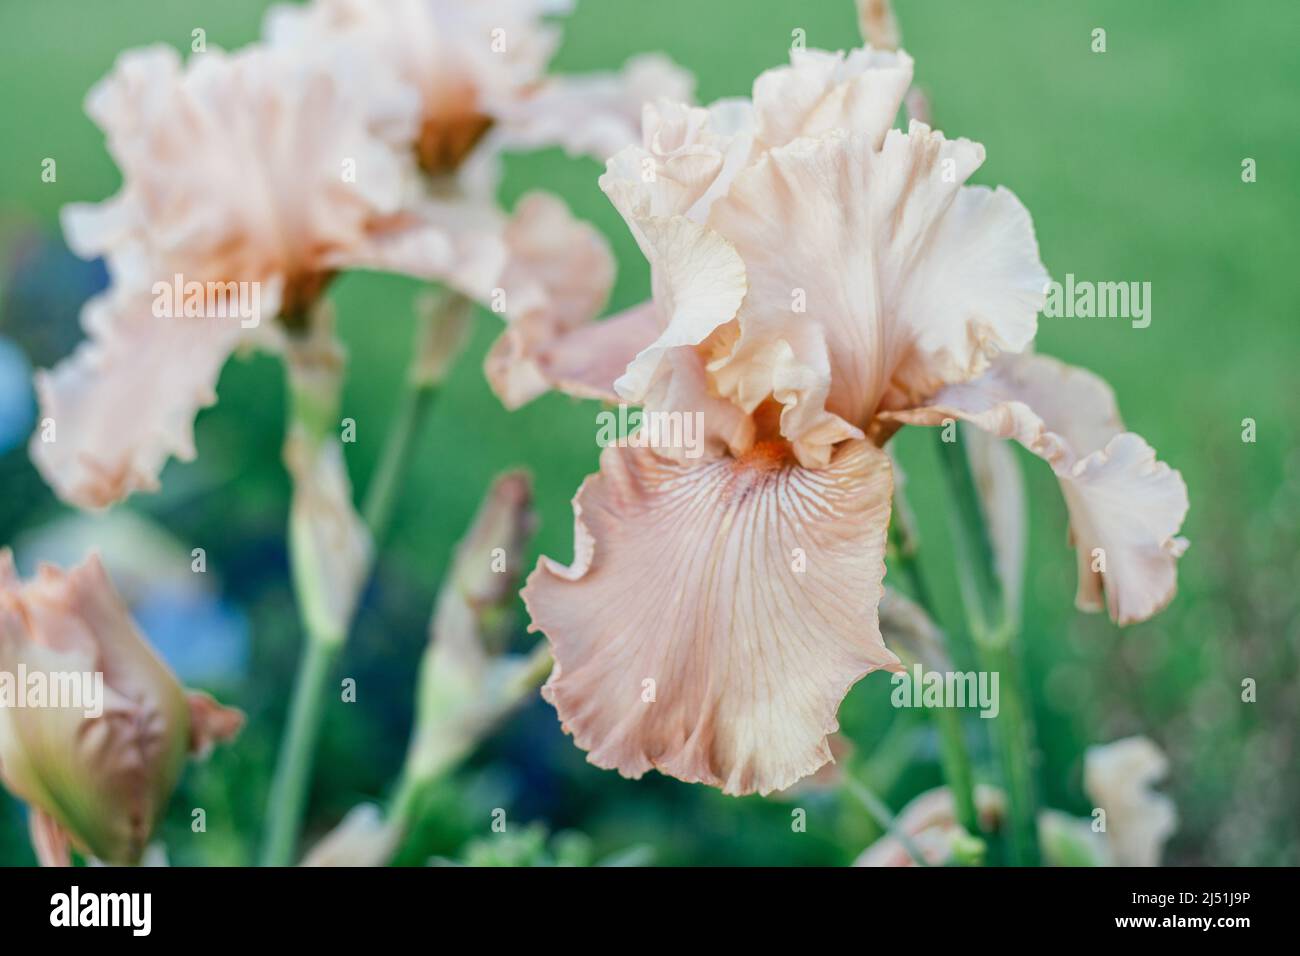 Hermosa inflorescencia de rosa suave, flor de melocotón de iris con pétalos ondulados floreciendo en el jardín. Concepto de naturaleza y primavera, jardinería y horticultura Foto de stock